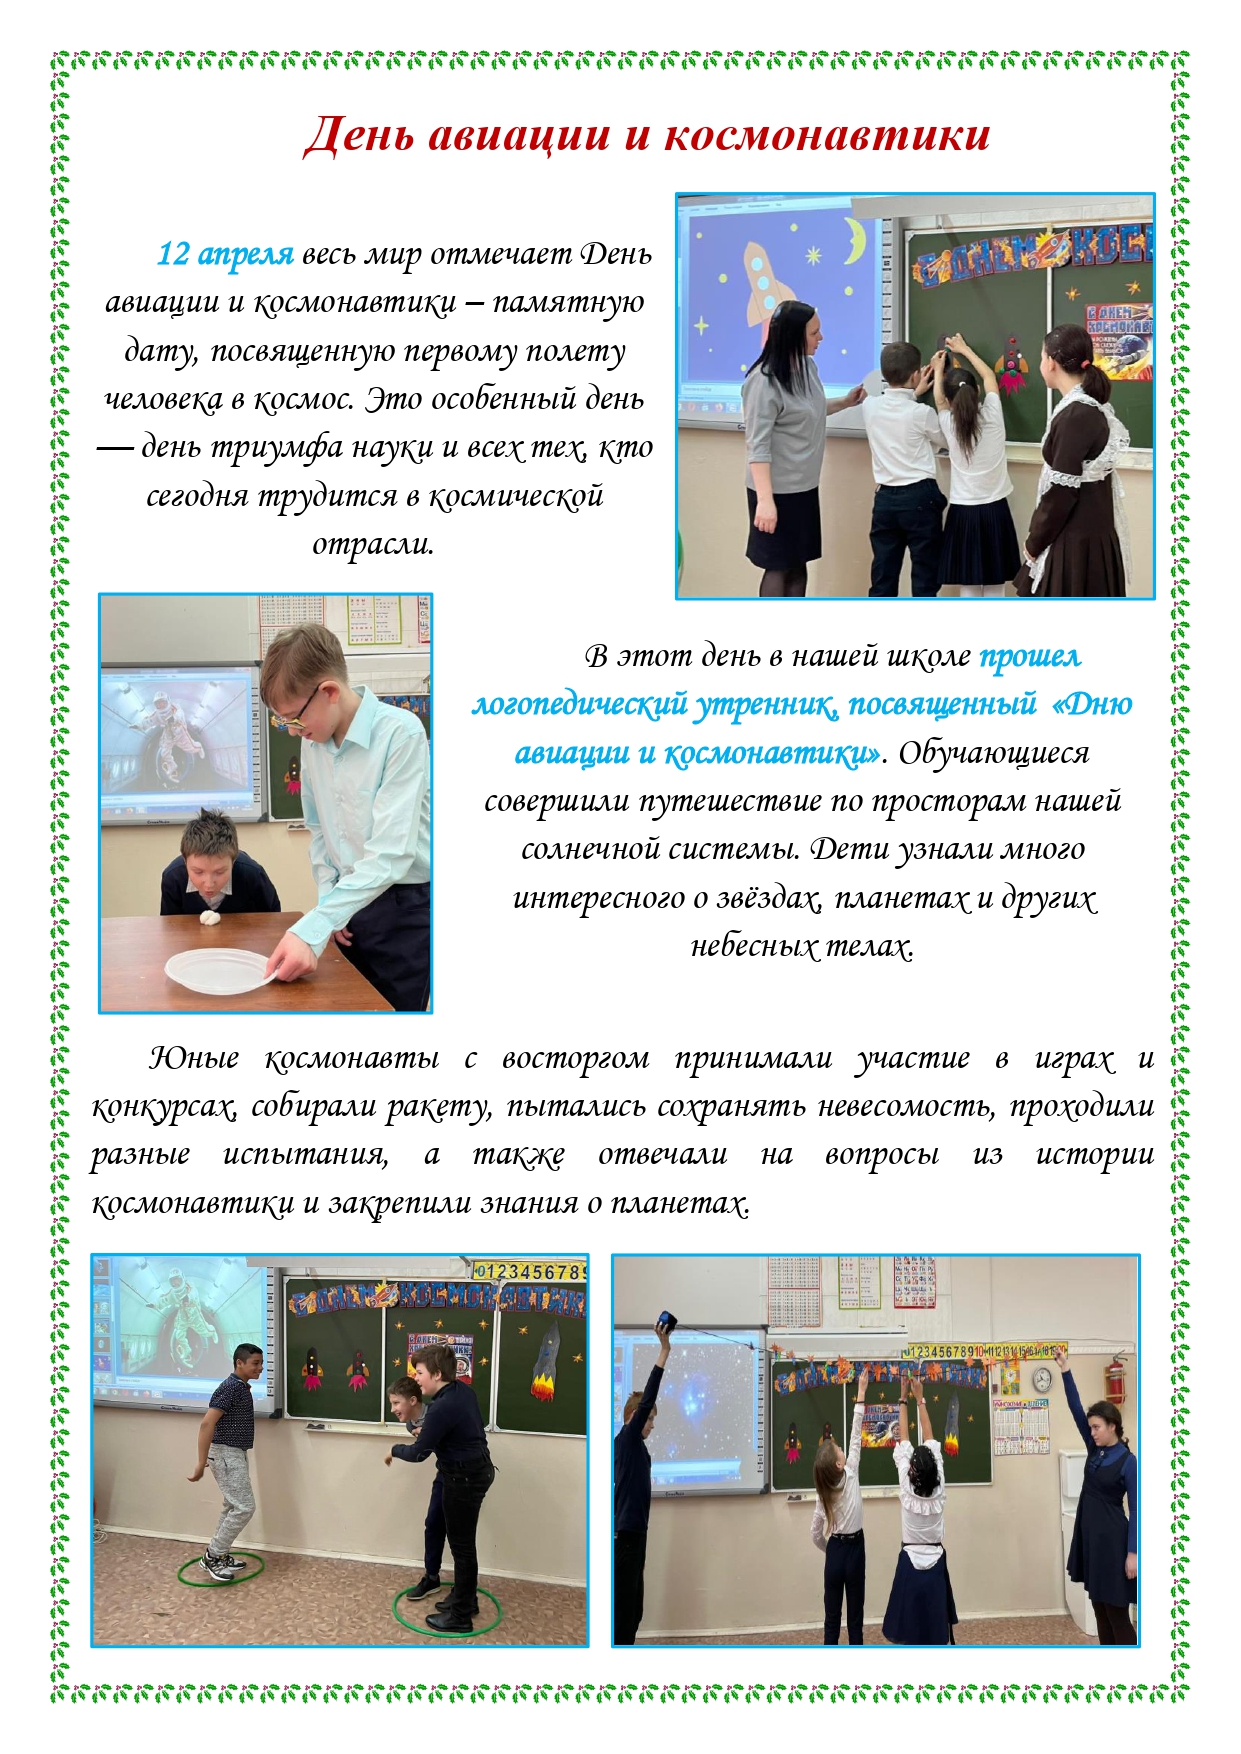 Школьная газета 2 page 20001